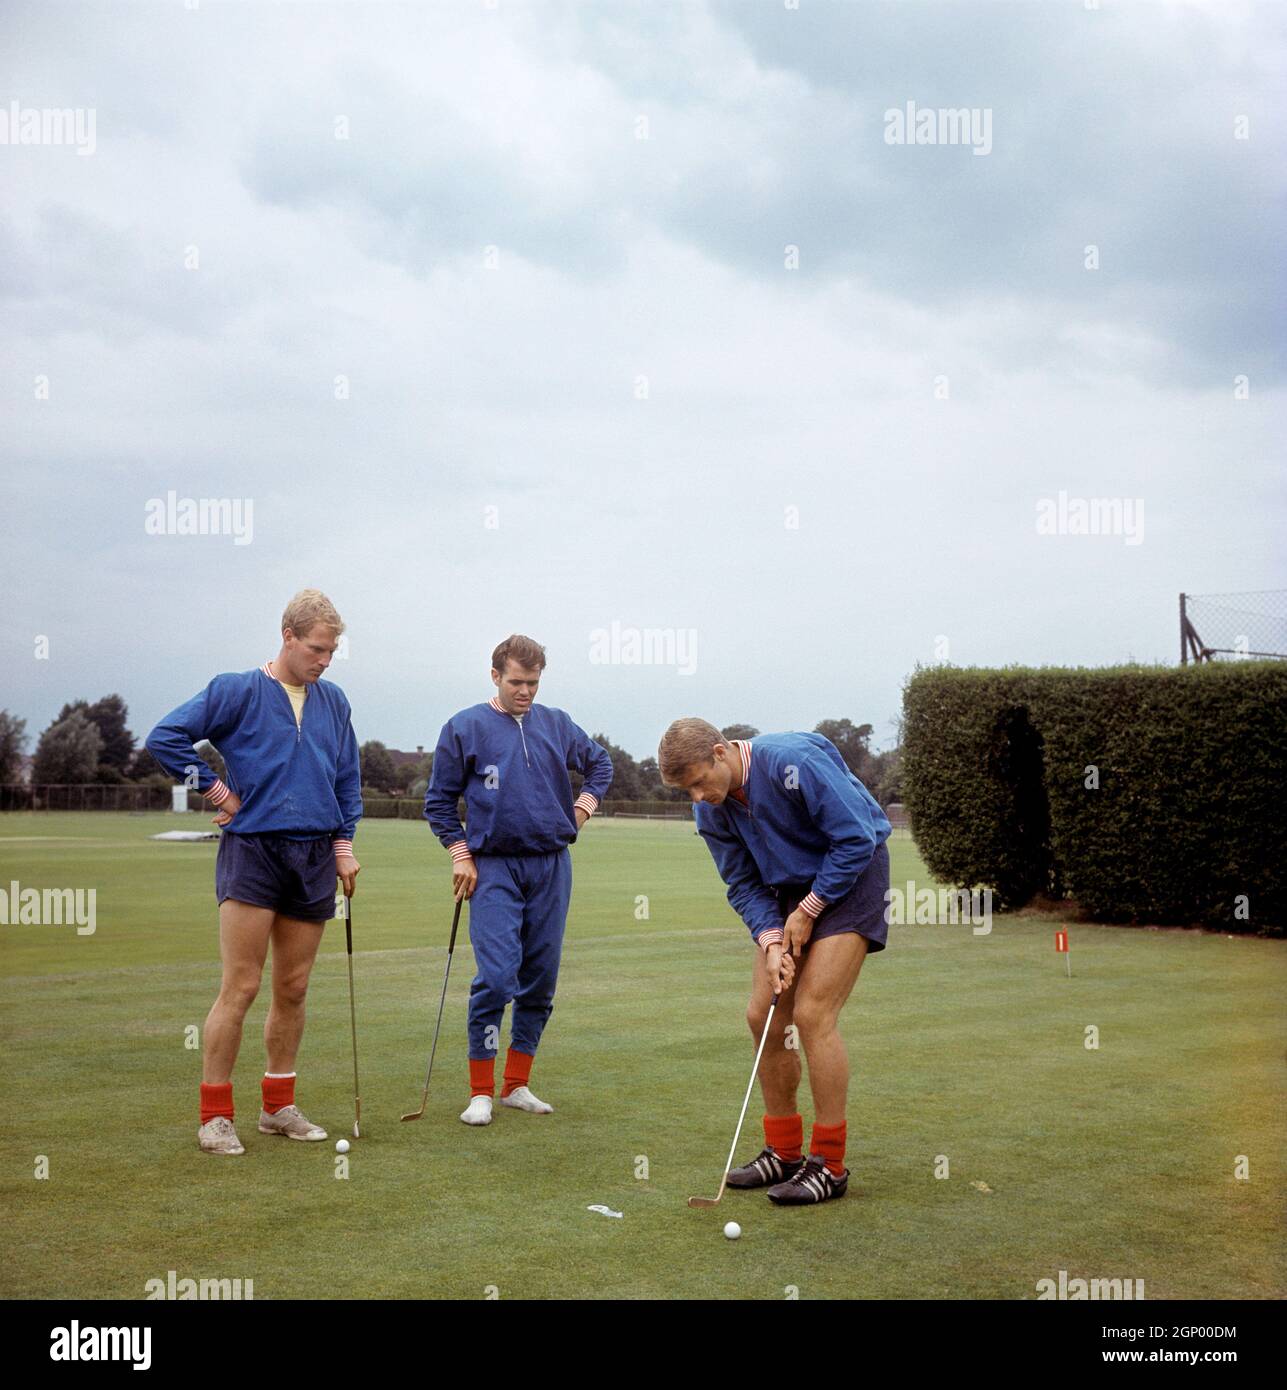 Foto del file datata 29-07-1966 del Roger Hunt putt inglese guardato da Ron Flowers e John Connelly (C) a Roehampton data di pubblicazione: Martedì 28 settembre 2021. Foto Stock